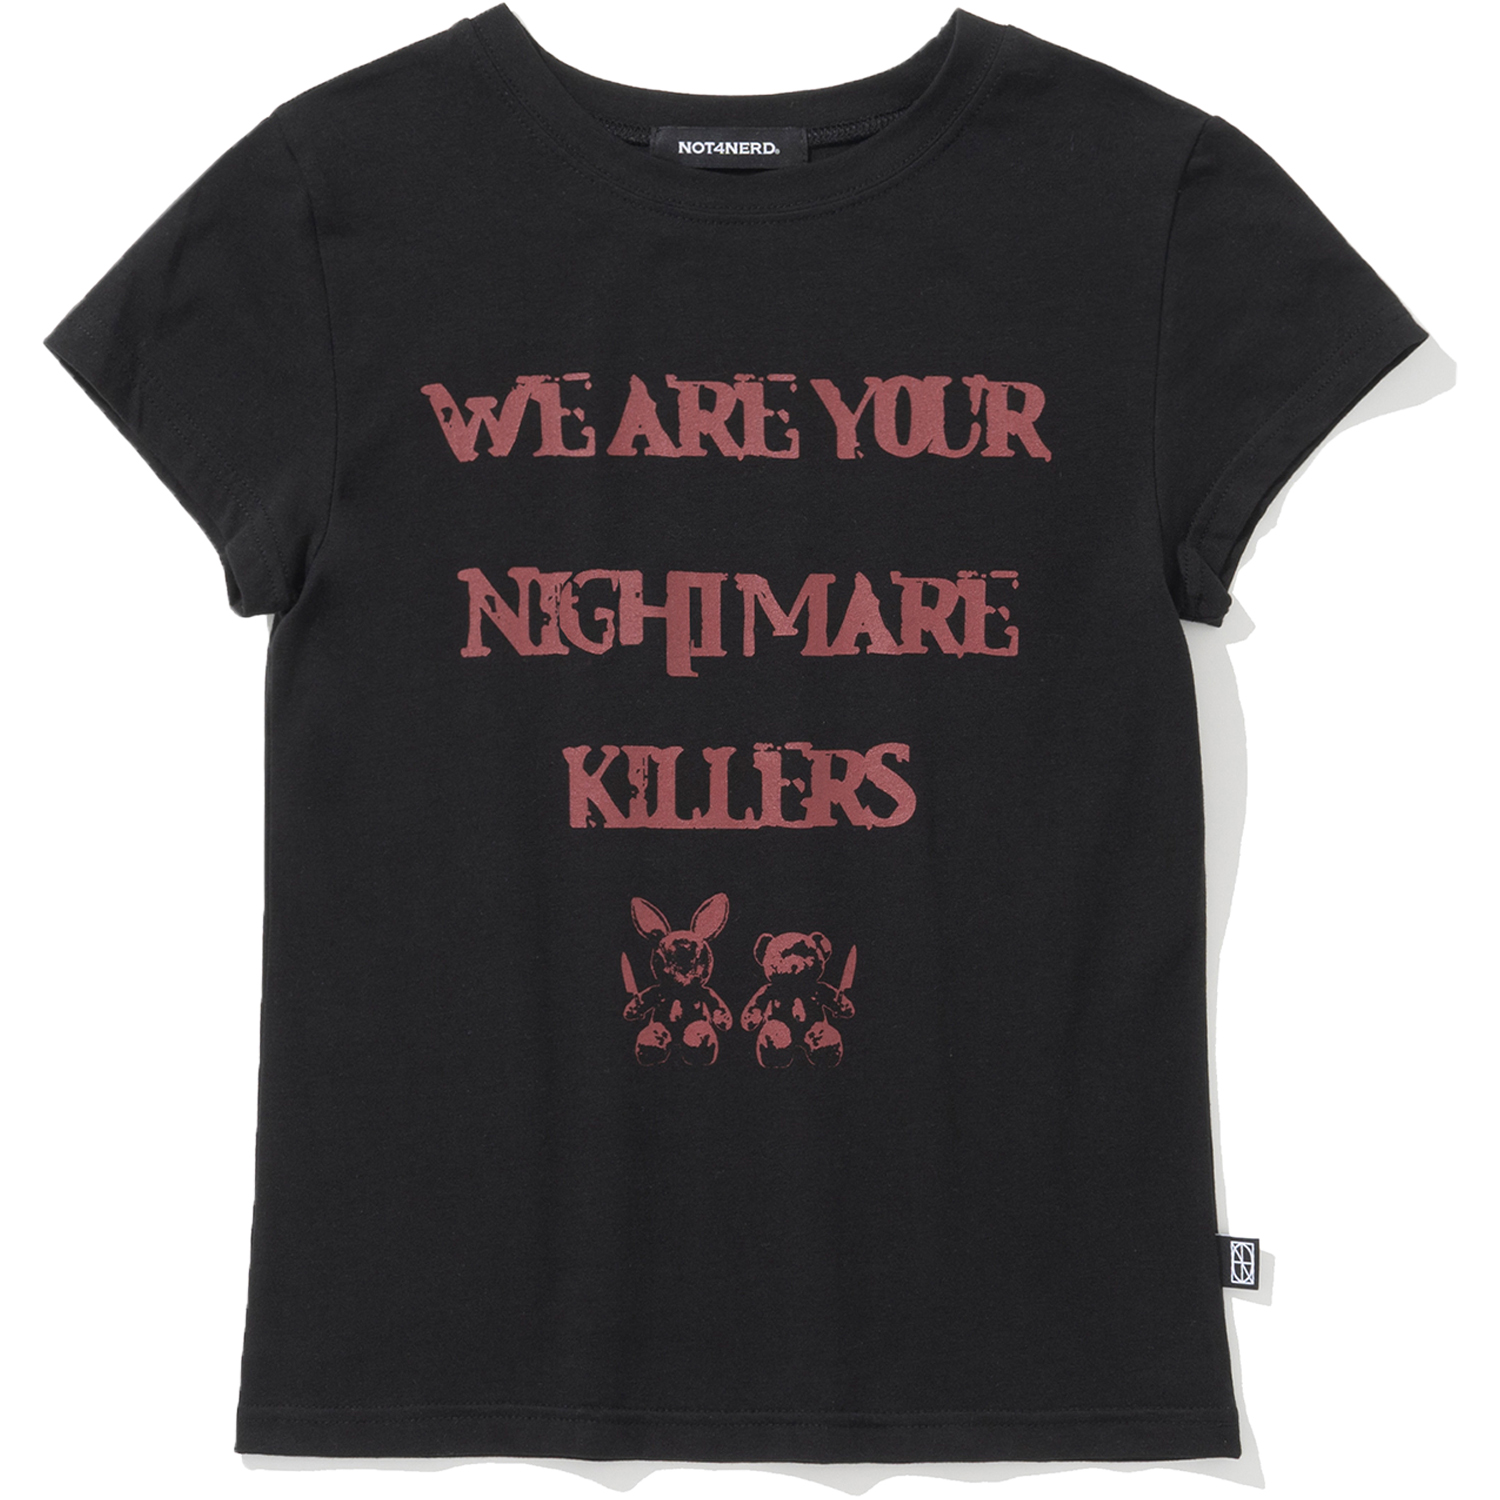 W 2Killers T-Shirts - Black,NOT4NERD